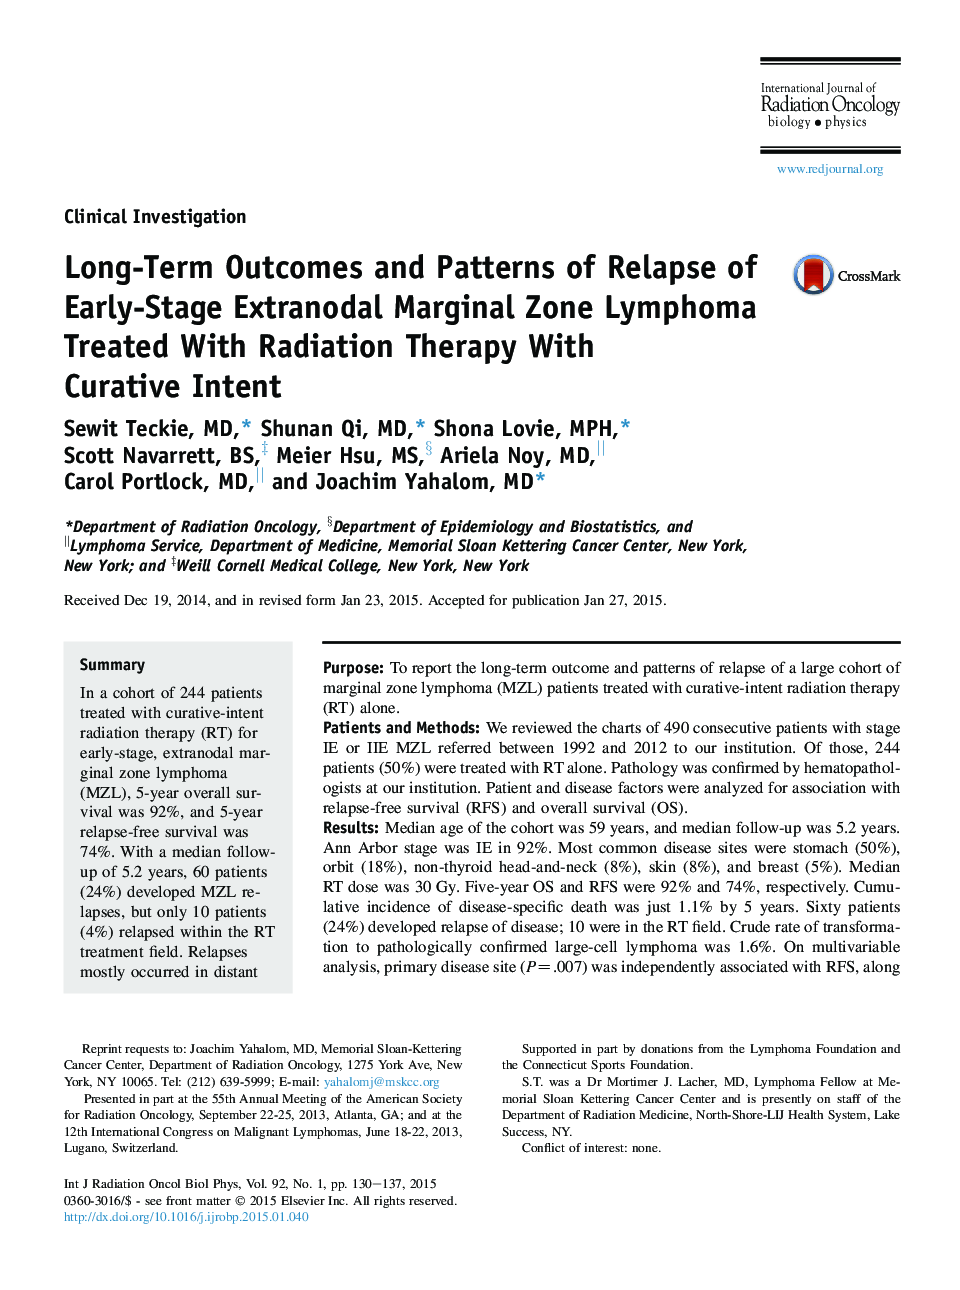 نتایج بلند مدت و الگوهای رفع لنفوم ناحیه لنفاوی فرابنفشی زودرس مرحله درمان با پرتودرمانی با هدف درمانی 